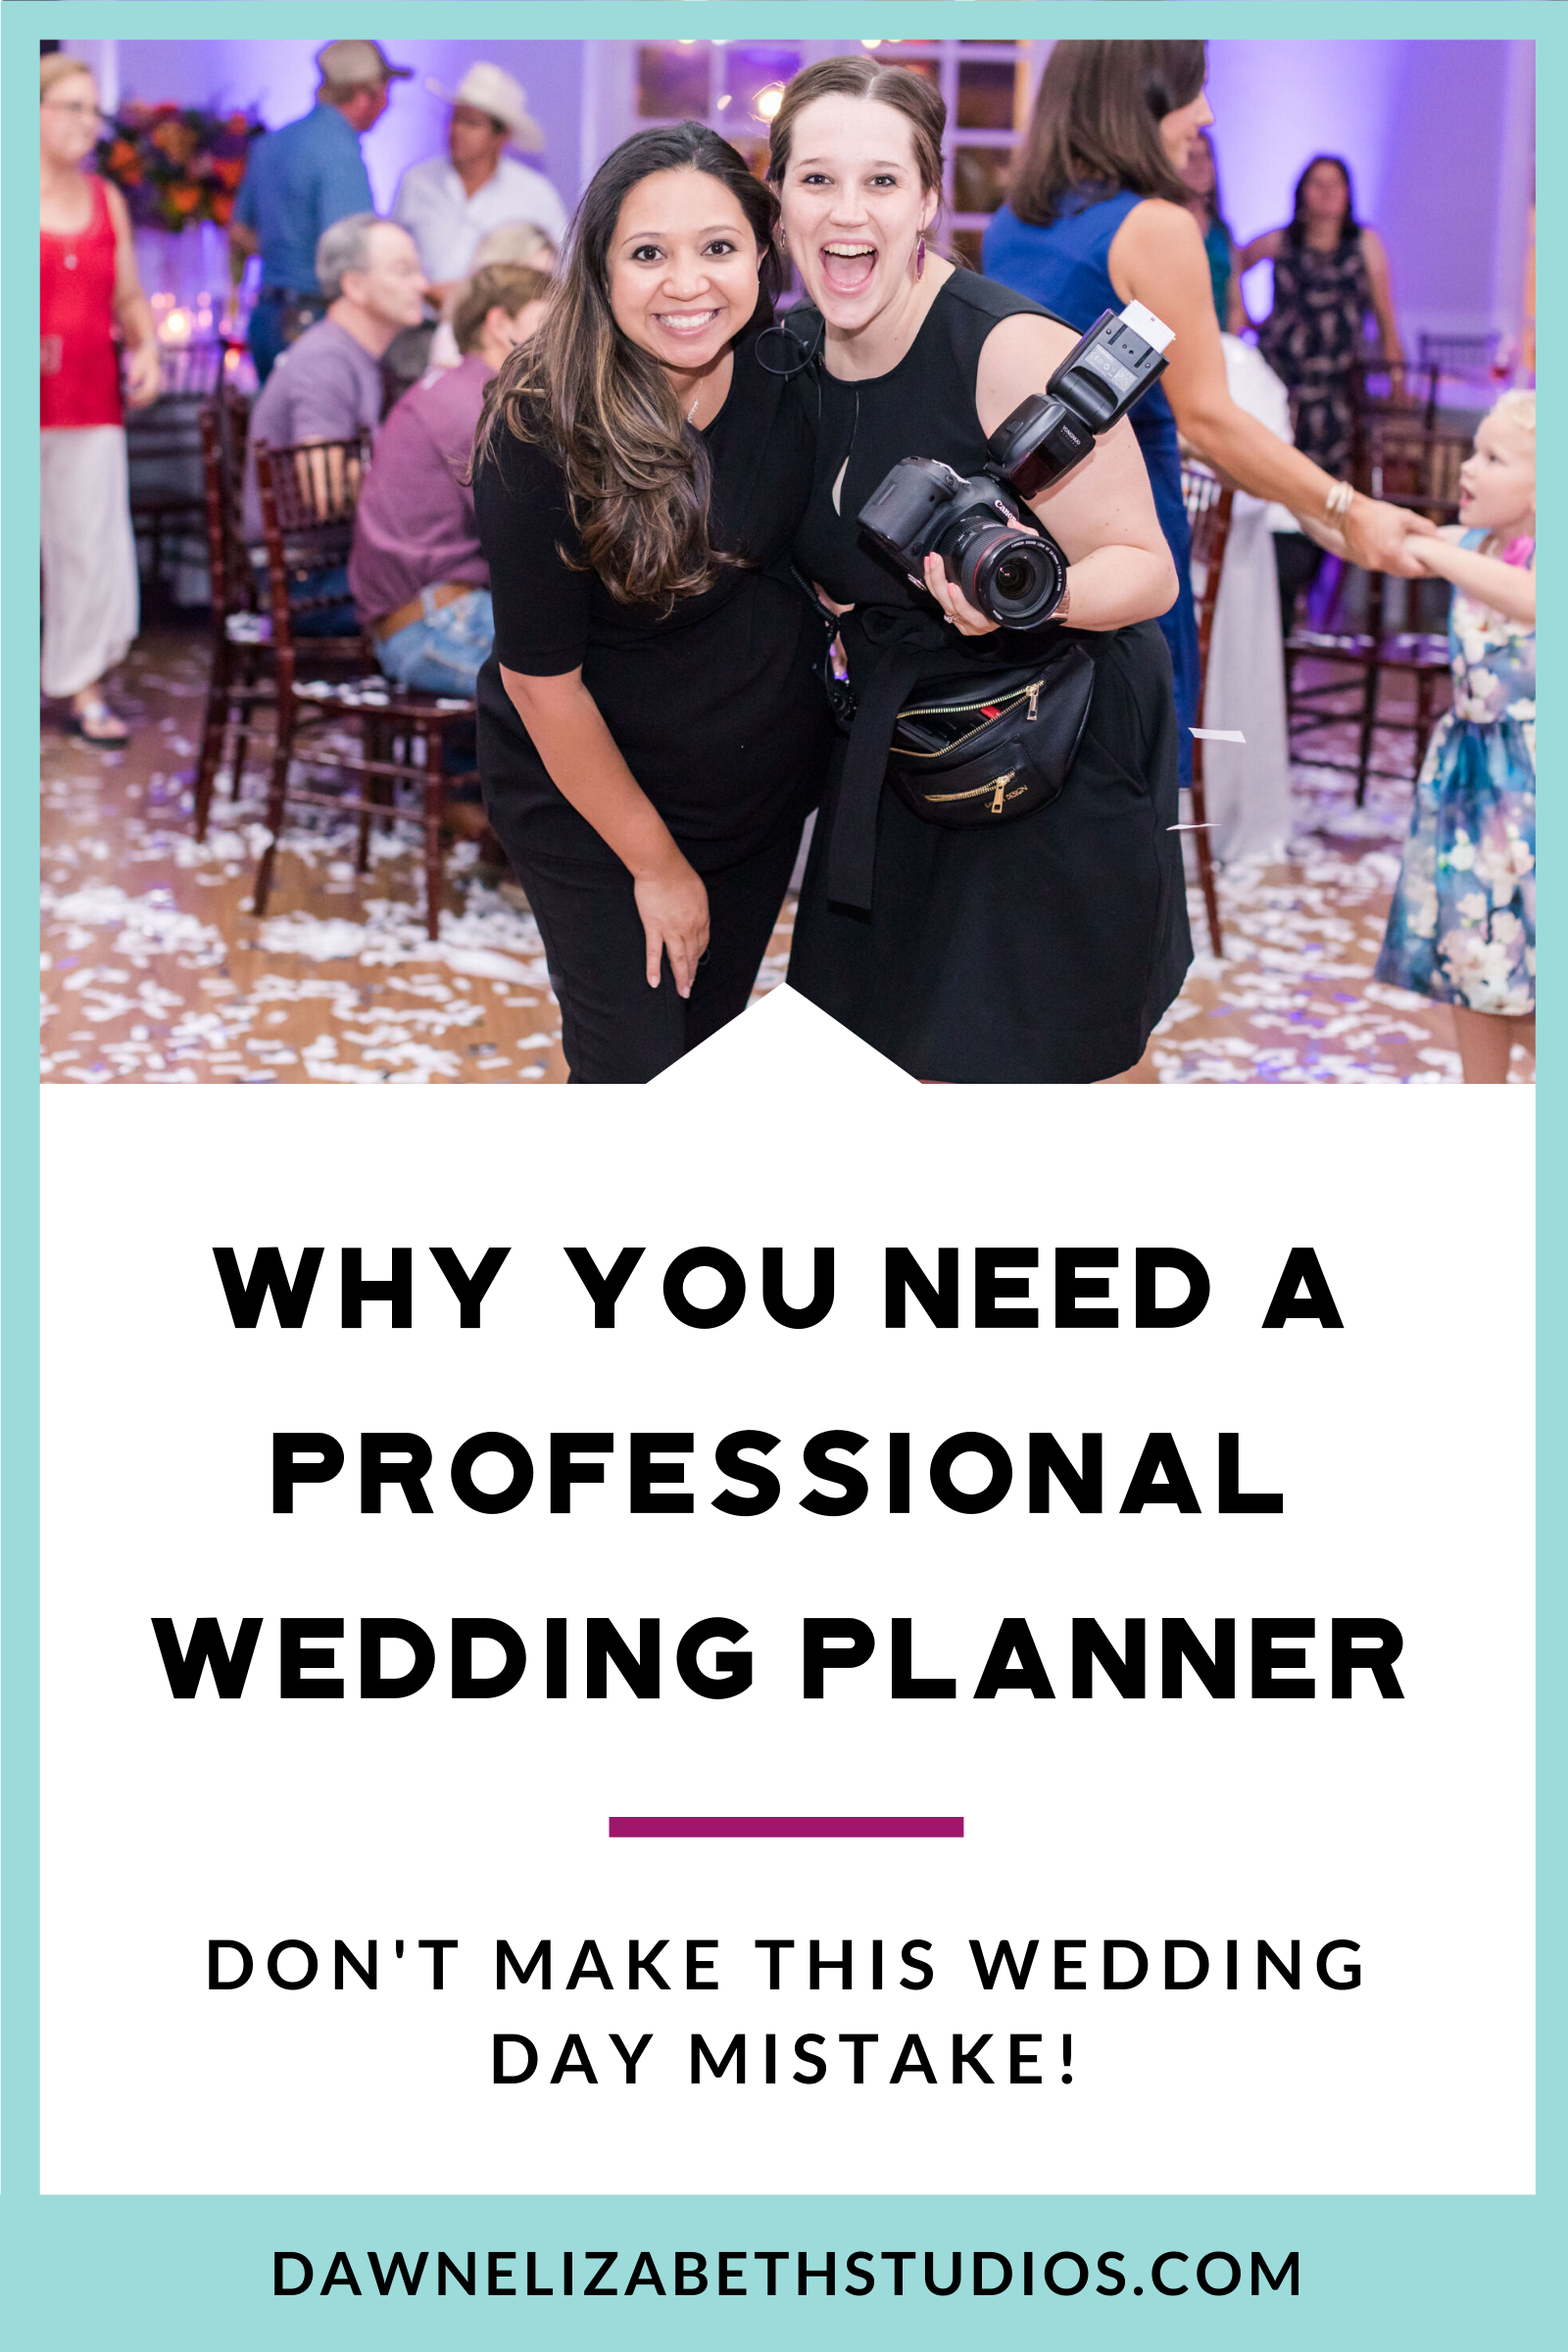 Why You Need a Wedding Planner by Dawn Elizabeth Studios, San Antonio Wedding Photographer